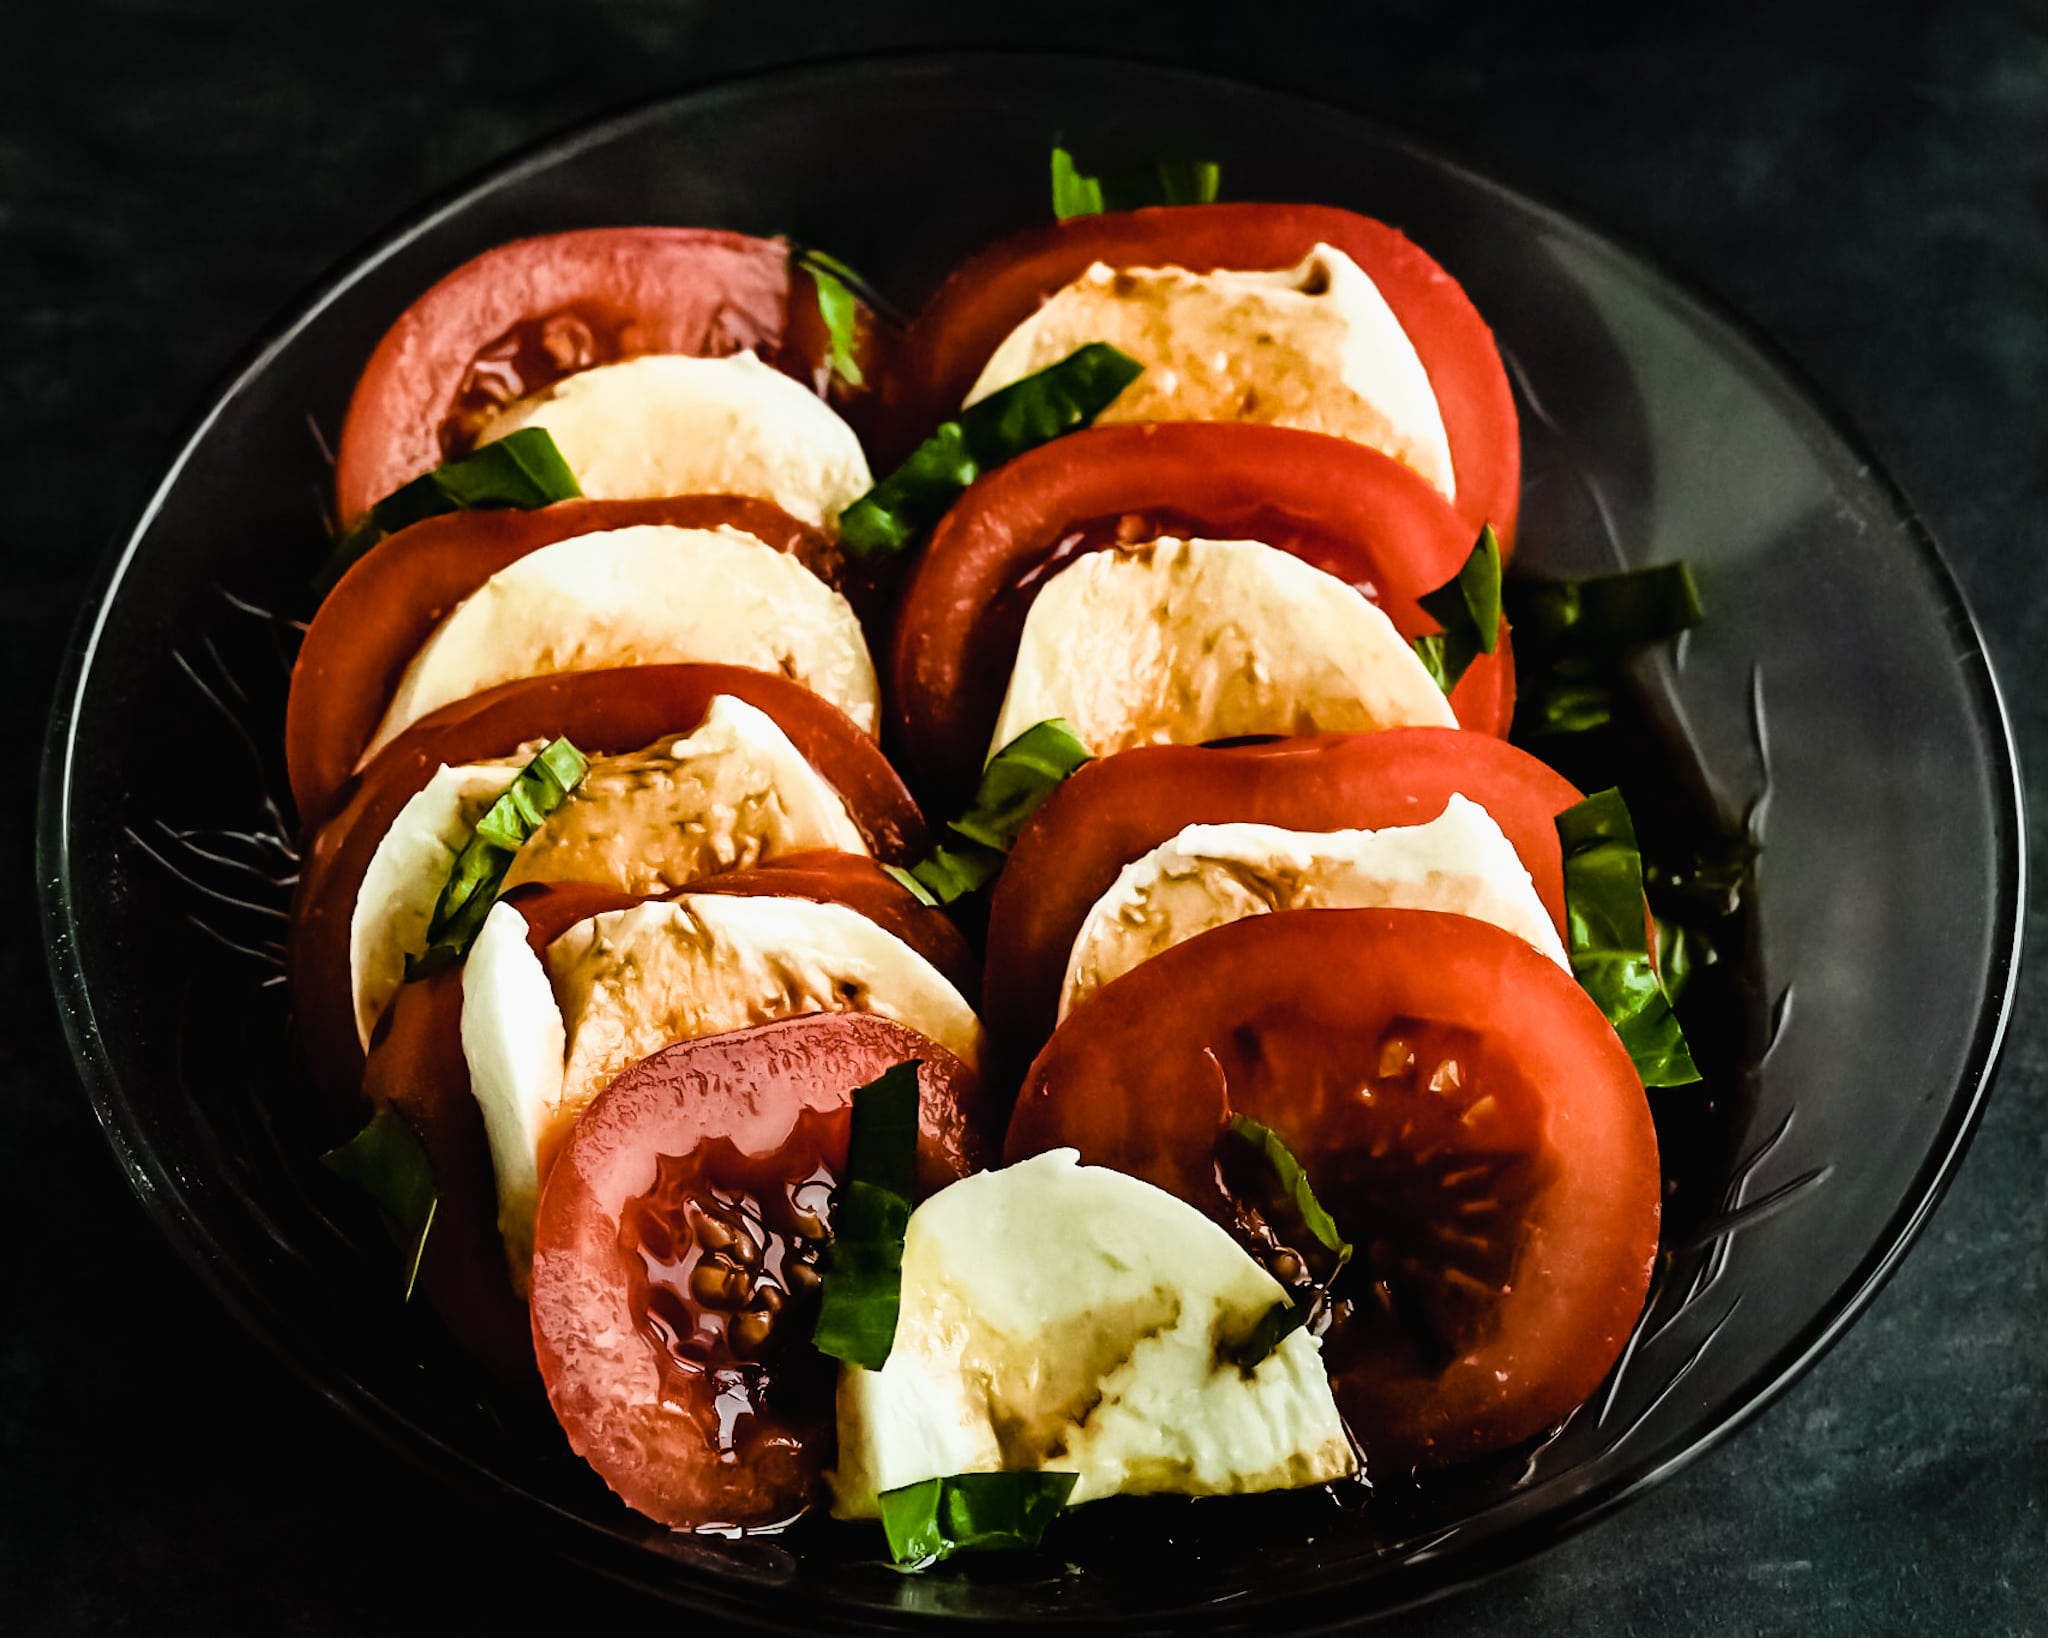 Tomato Mozzarella Caprese Salad